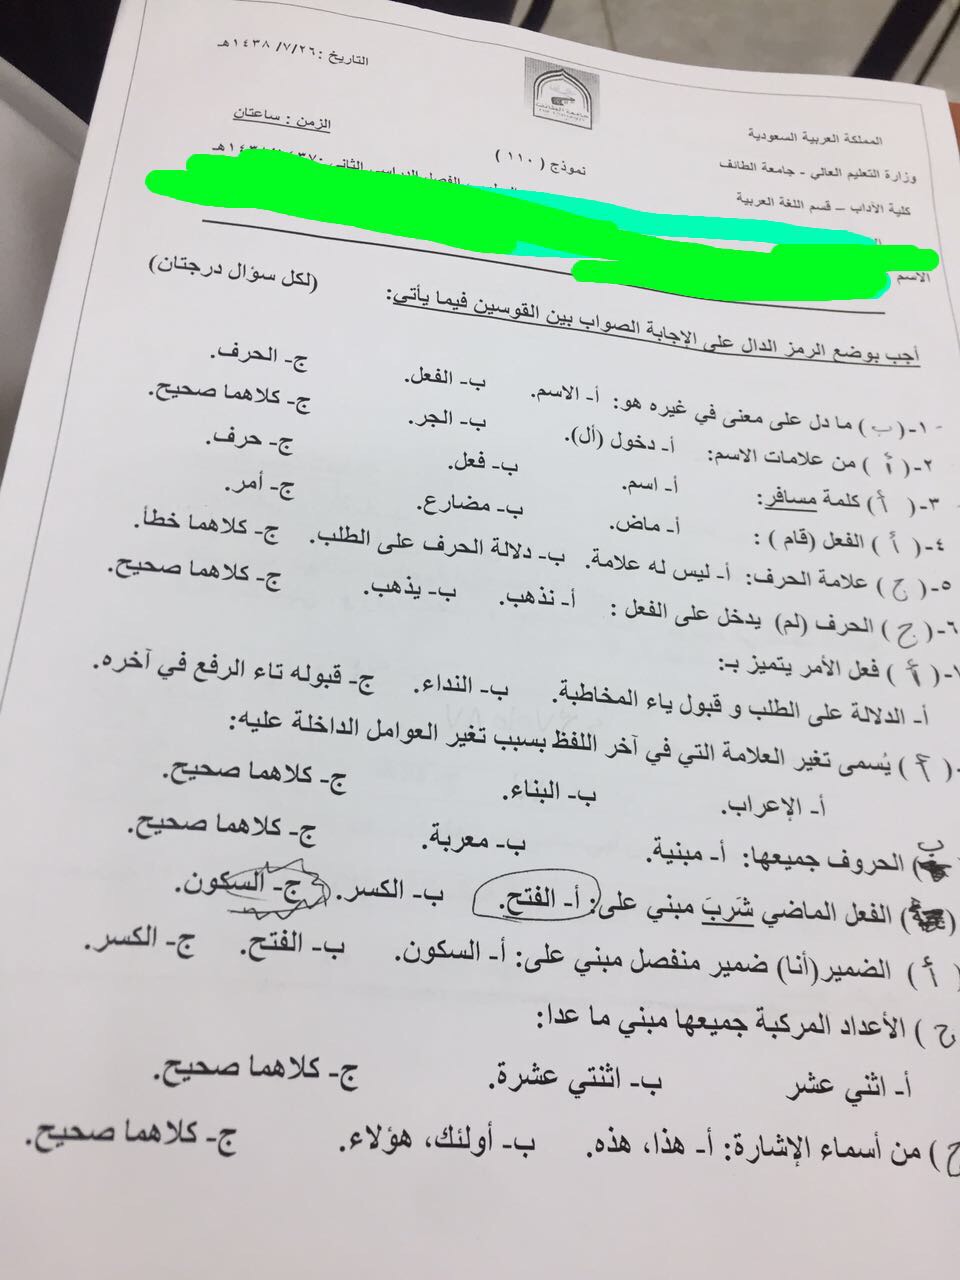 اختبار اللغة العربية 1 الفصل الثاني 1438هـ